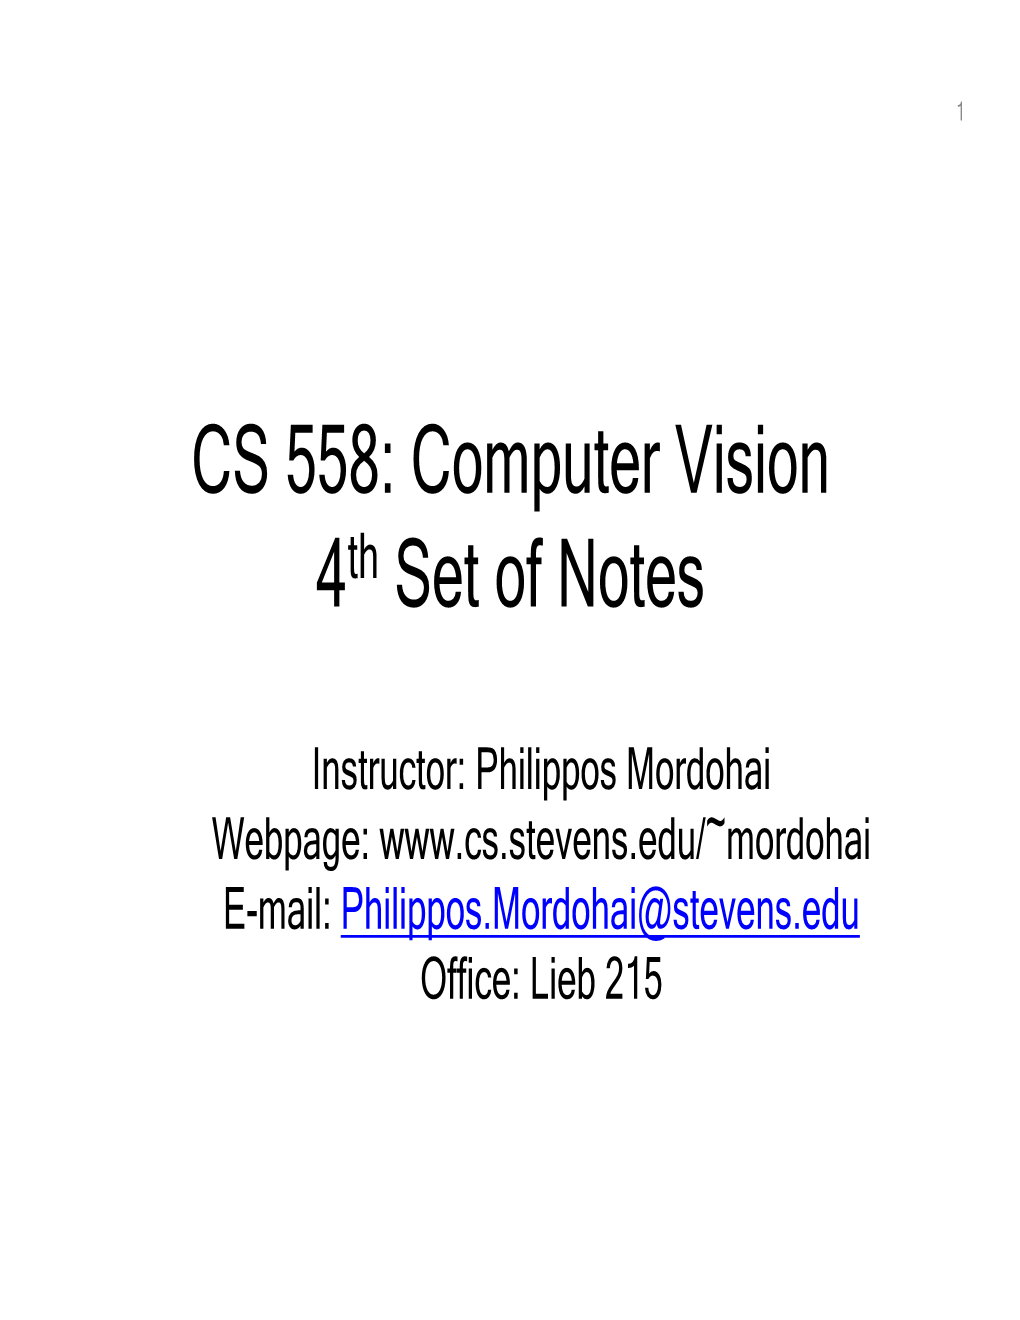 CS 558: Computer Vision 4Th Set of Notes